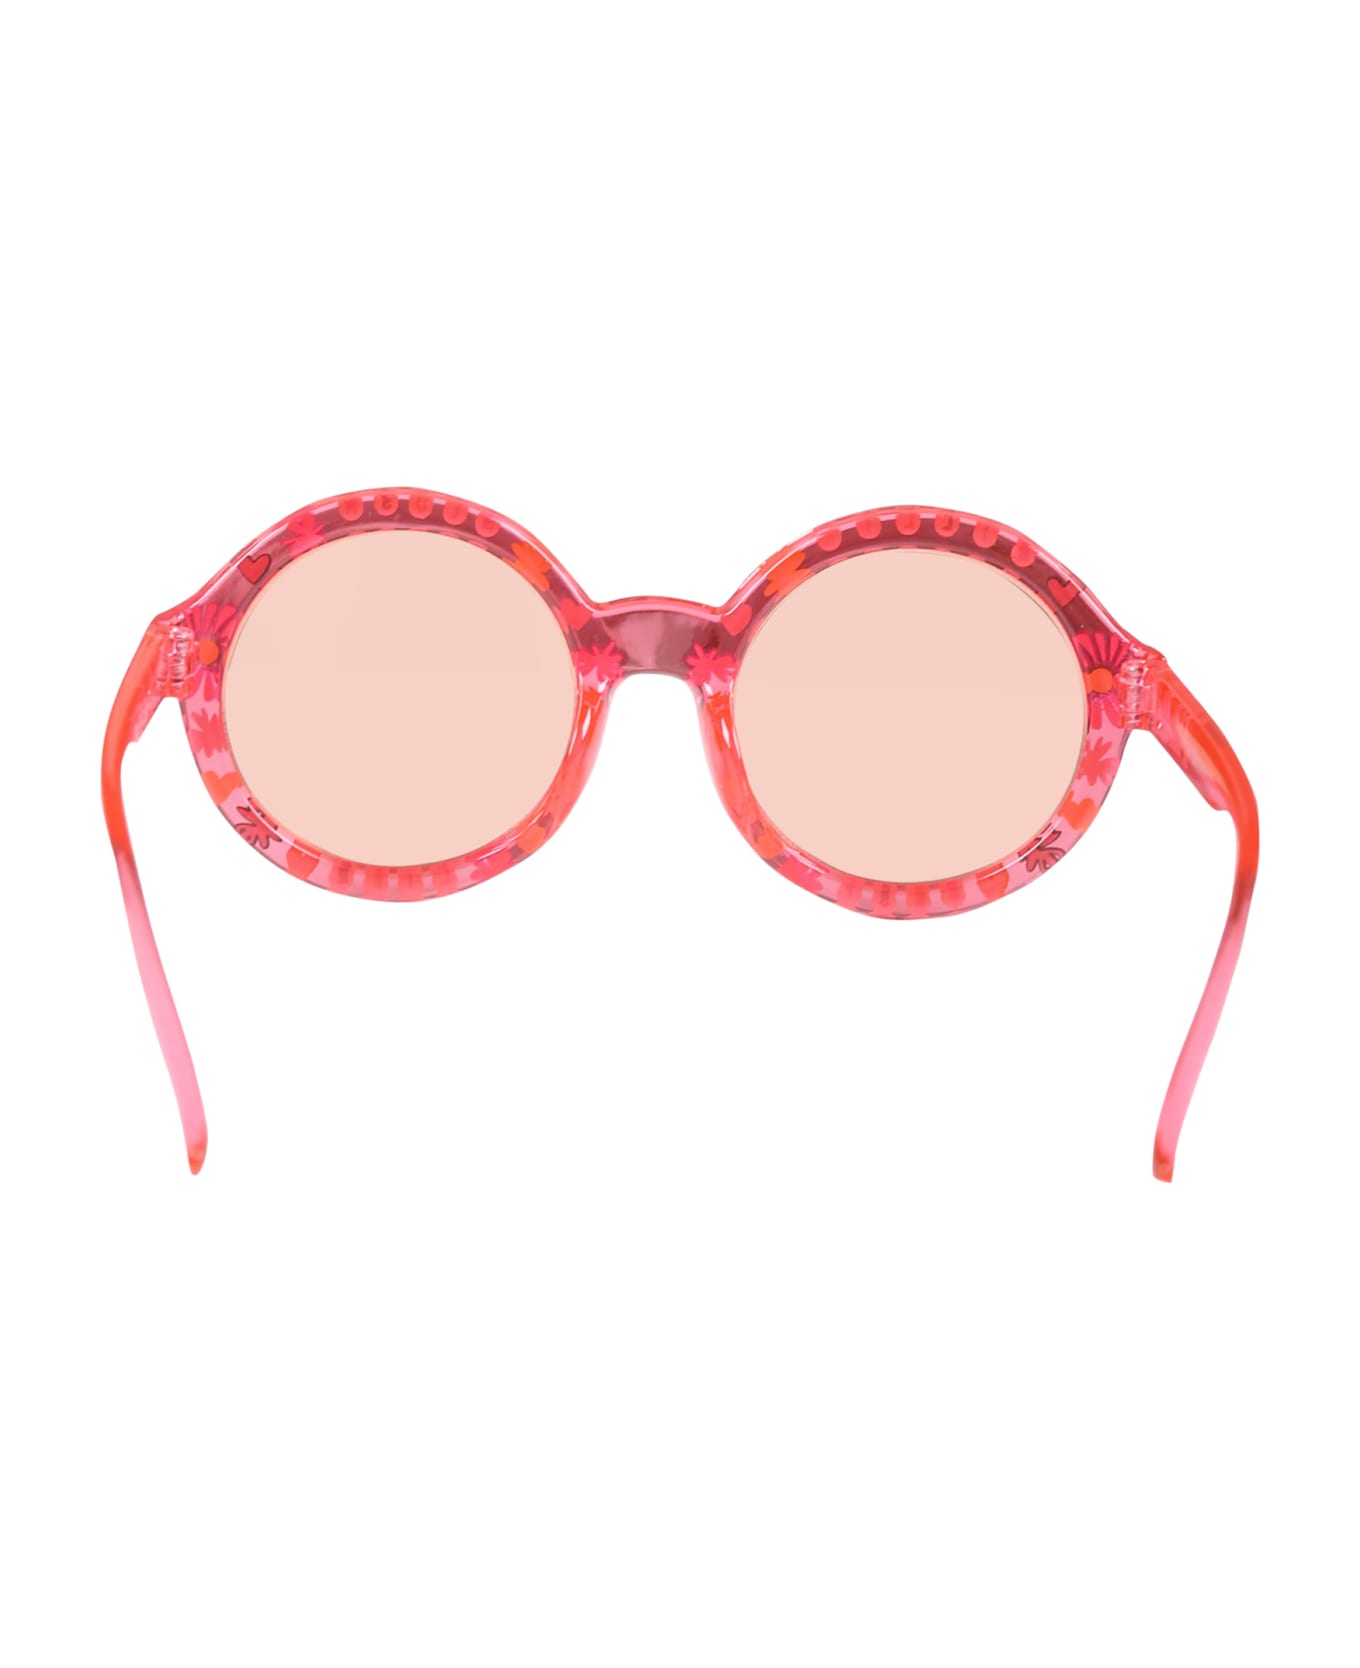 Billieblush Multicolor Sunglasses For Girl - Multicolor